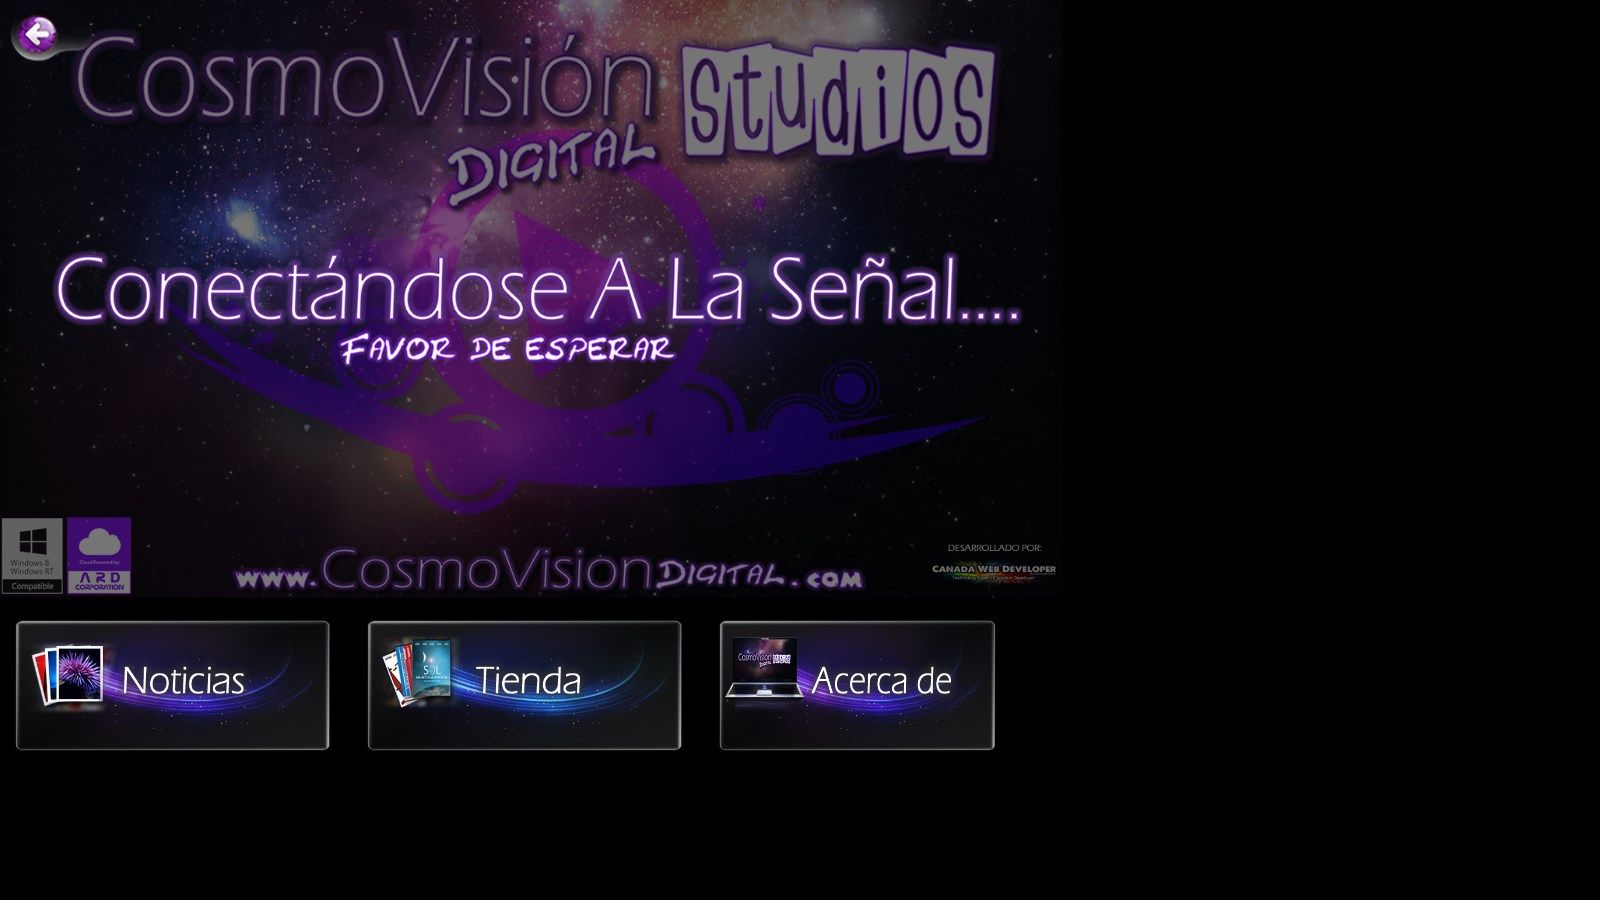 Feedback de CosmoVisión Digital